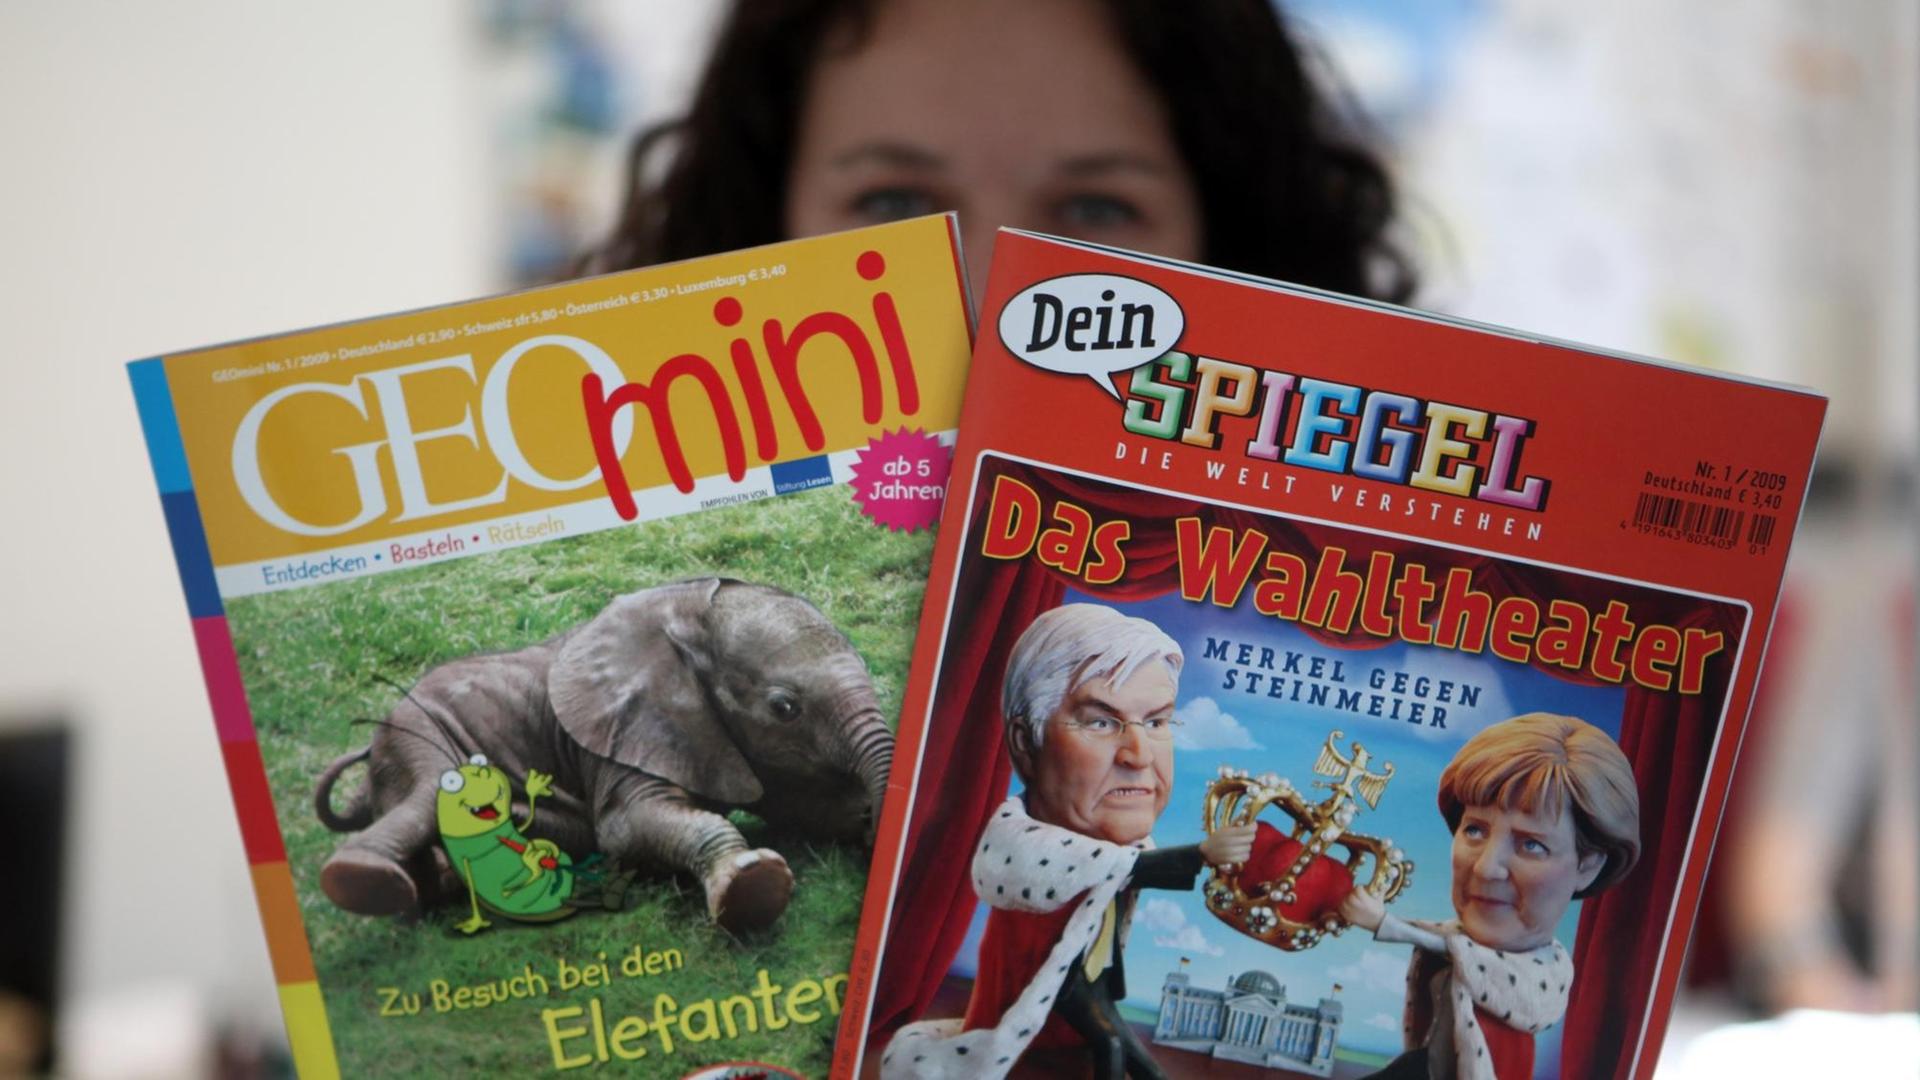 Eine Mitarbeiterin zeigt in Hamburg die neuen Kinderzeitschriften "GEOmini" und "Dein Spiegel".